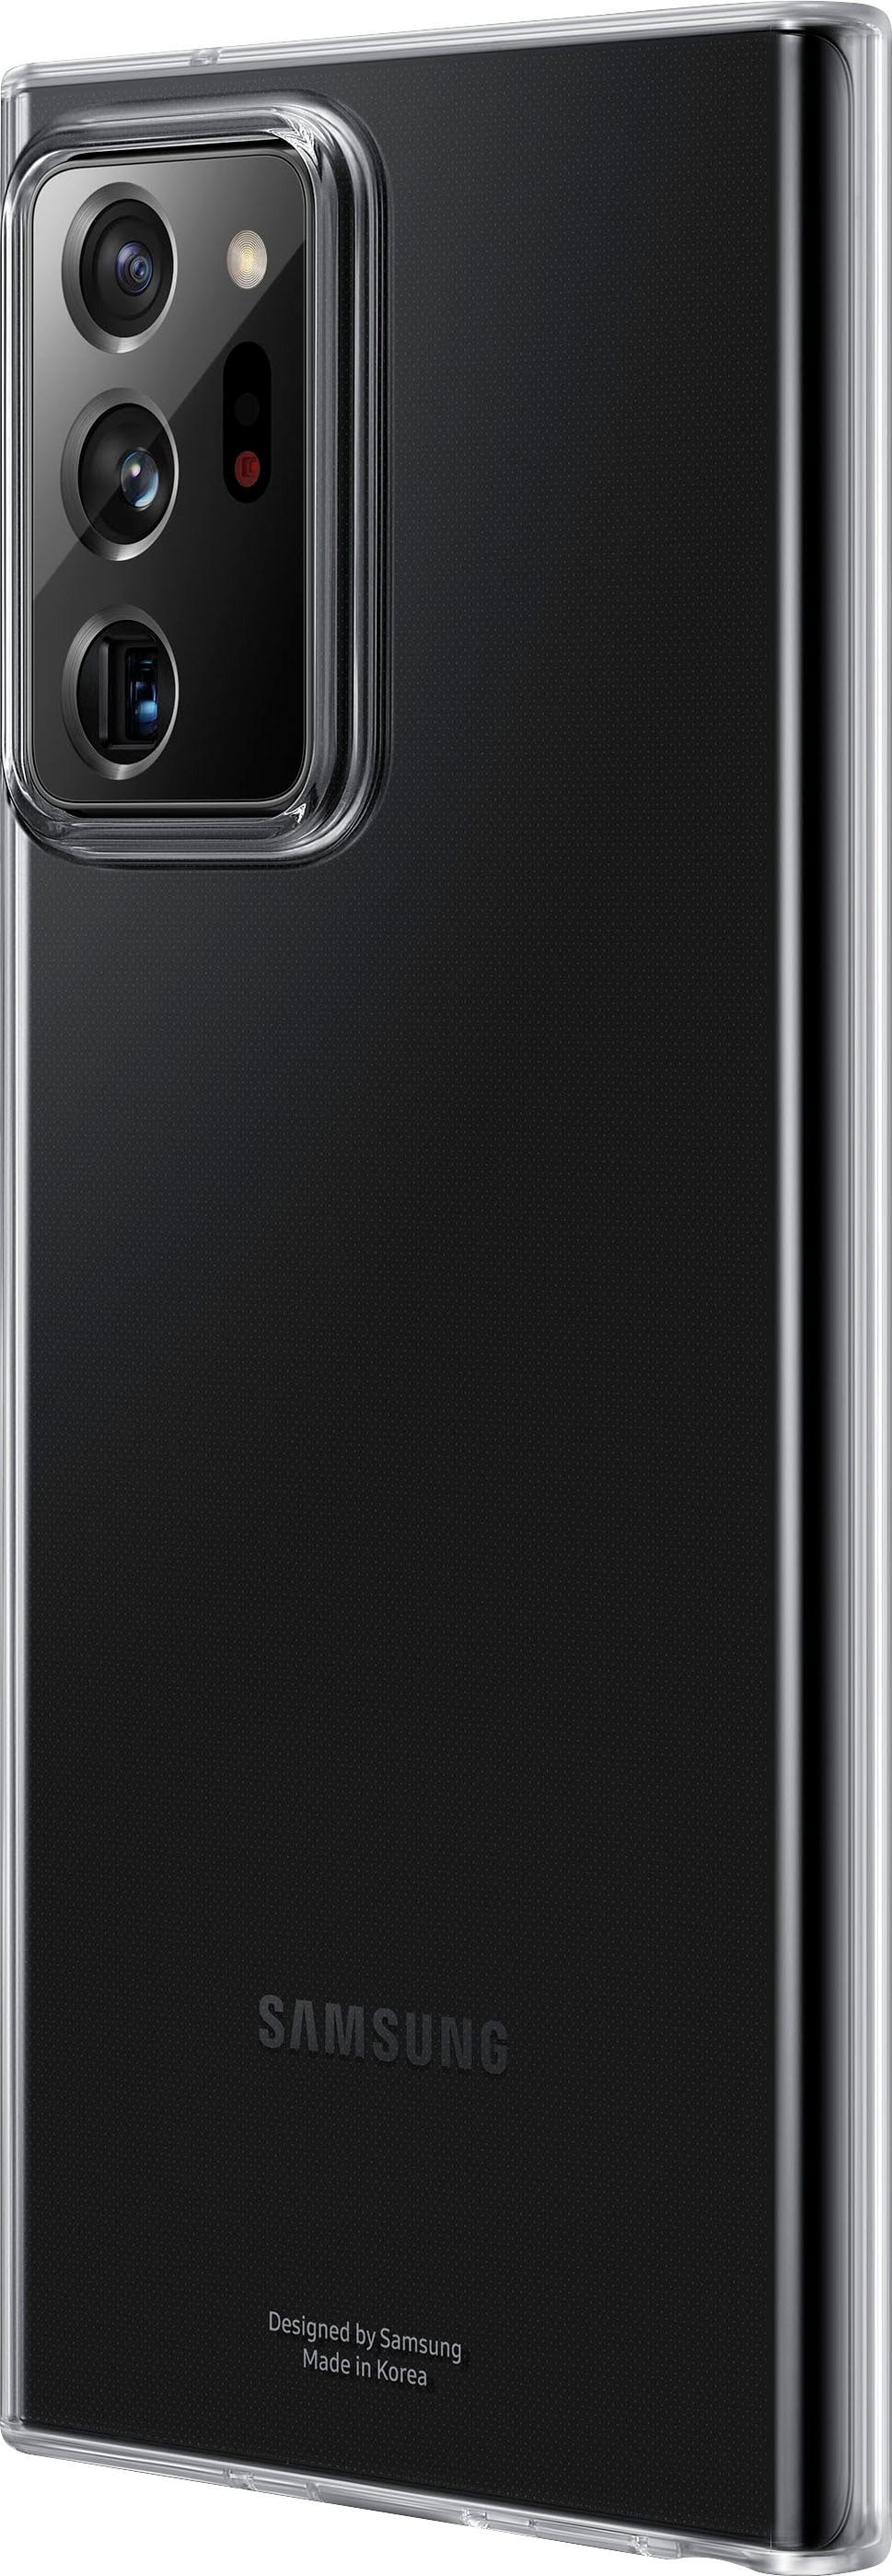 Samsung Smartphone Hulle Ef Qg996 Samsung Galaxy S21 17 Cm 6 7 Zoll Online Bestellen Universal